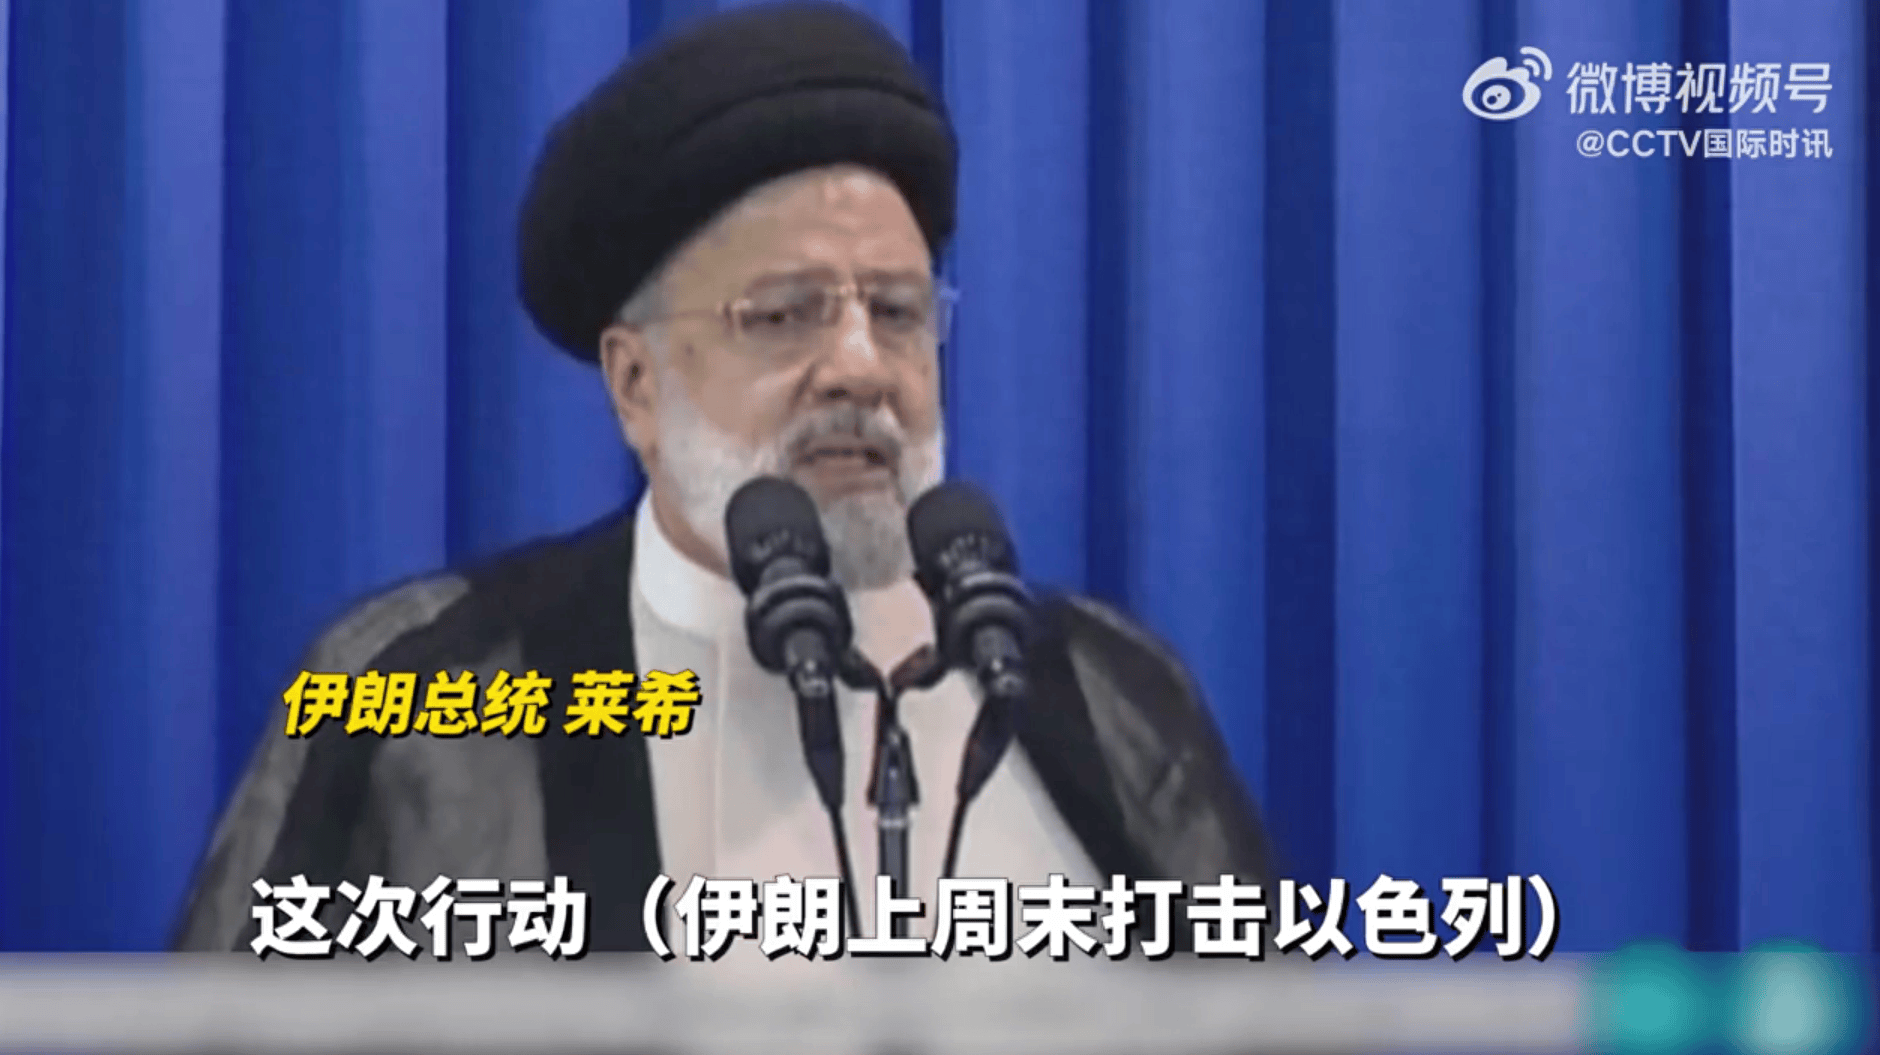 伊朗总统发声未提及伊斯法罕爆炸声